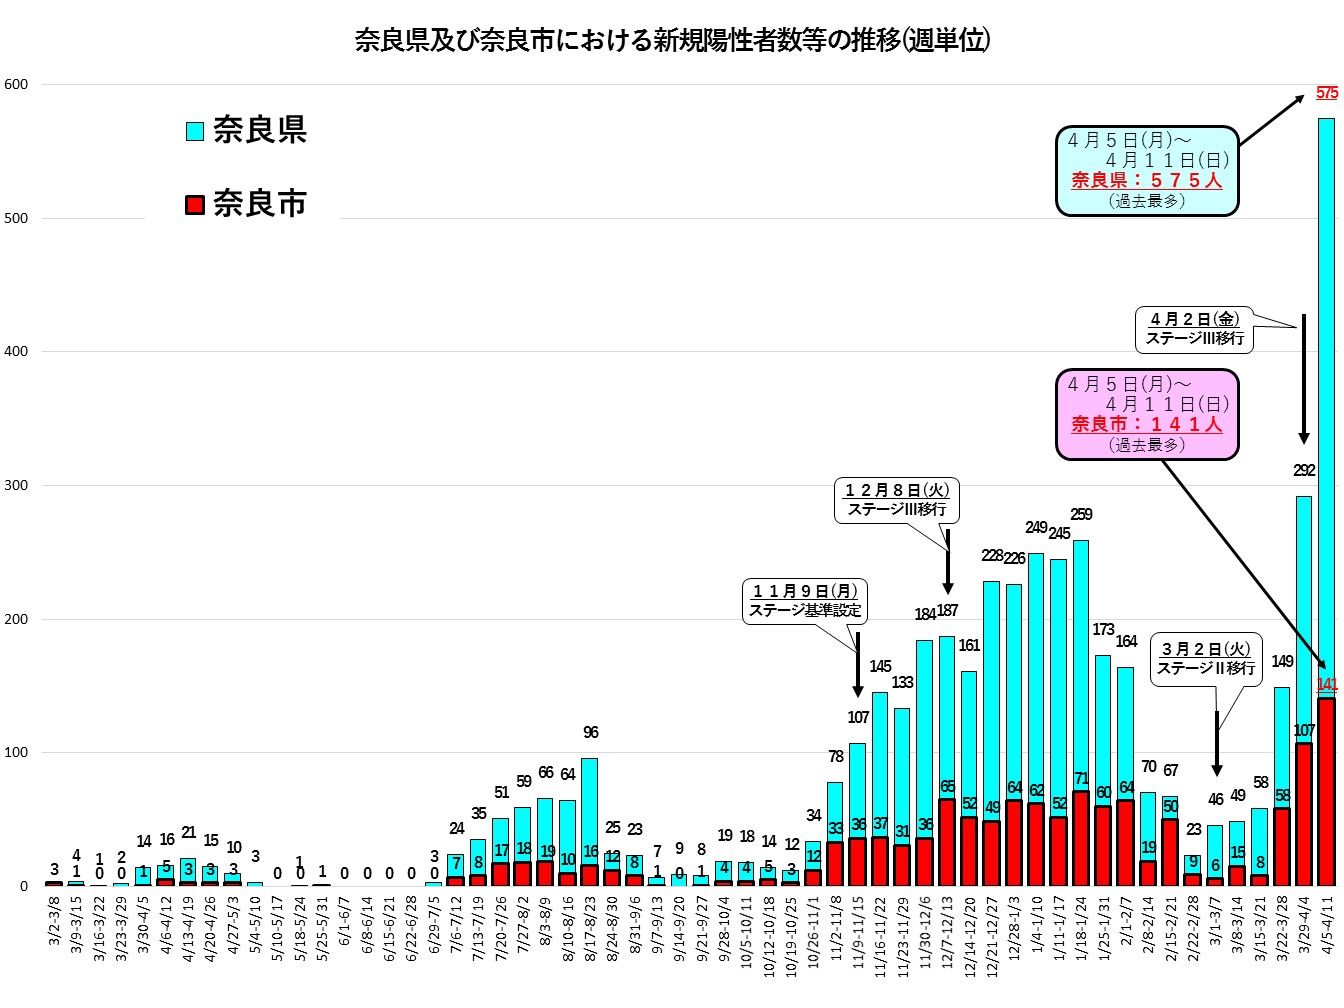 奈良県及び奈良市における新規陽性者数等の推移（週単位）